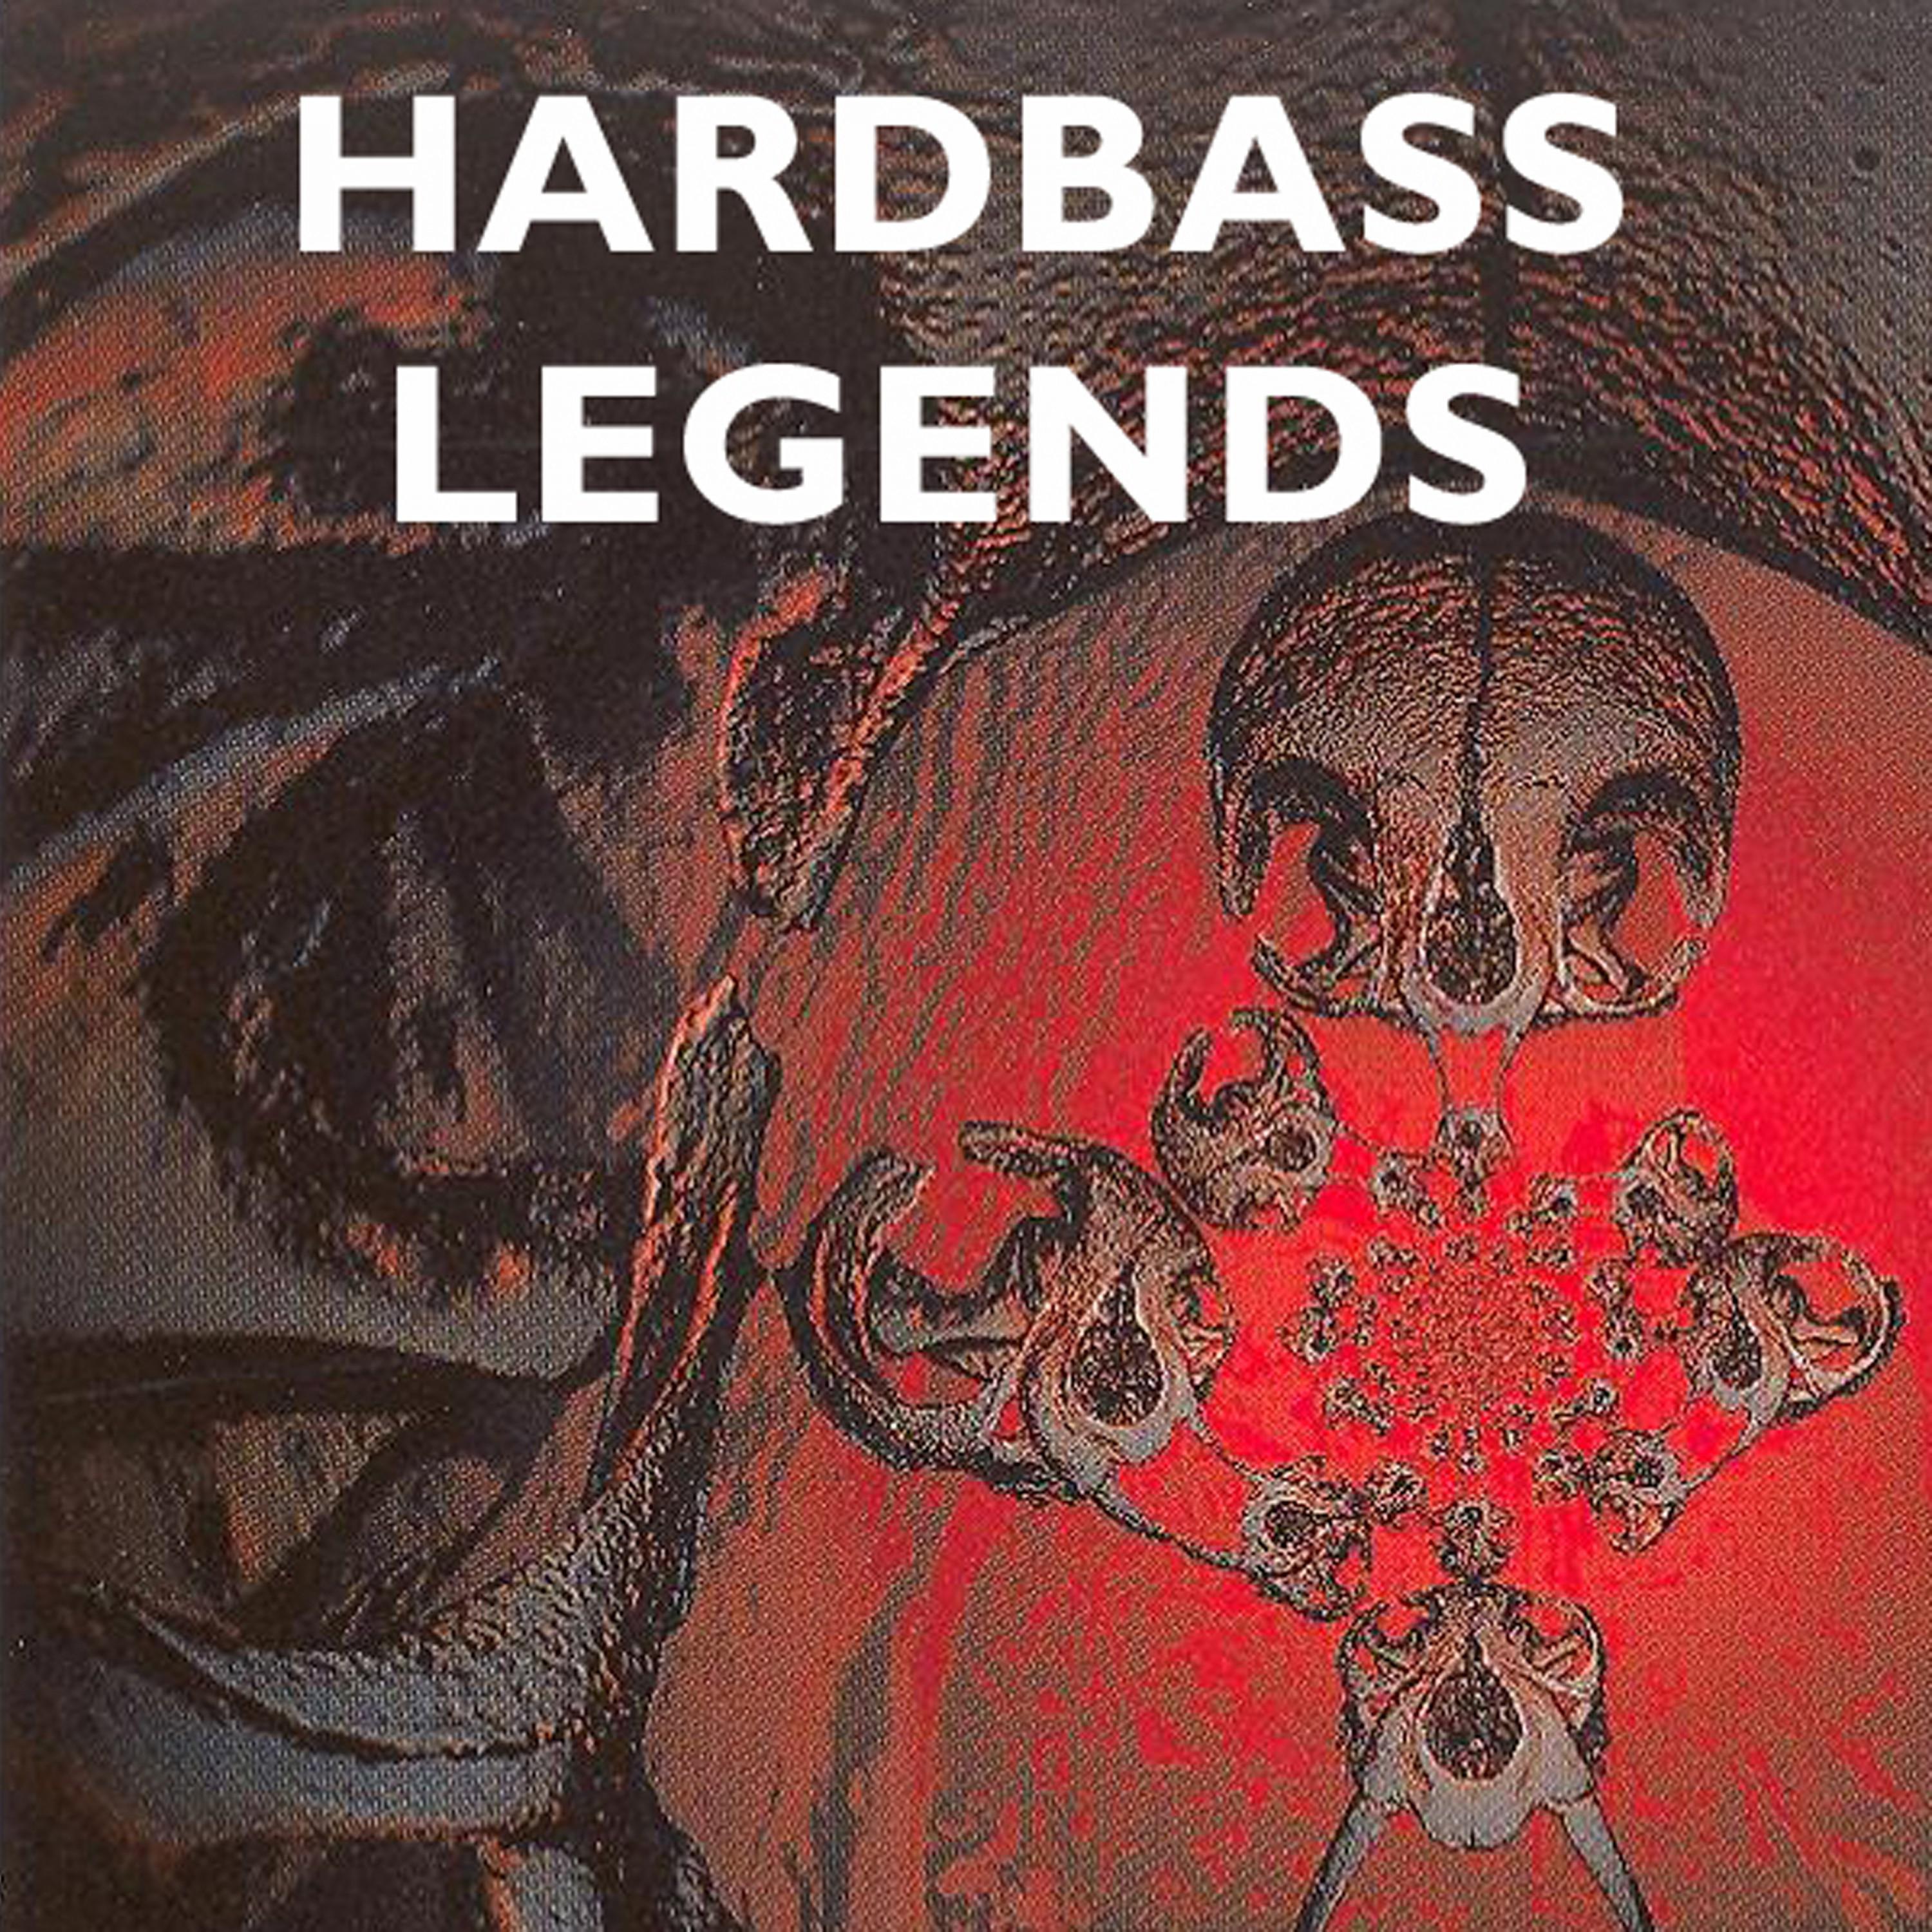 Da Hardbeat Creators - Hardbass